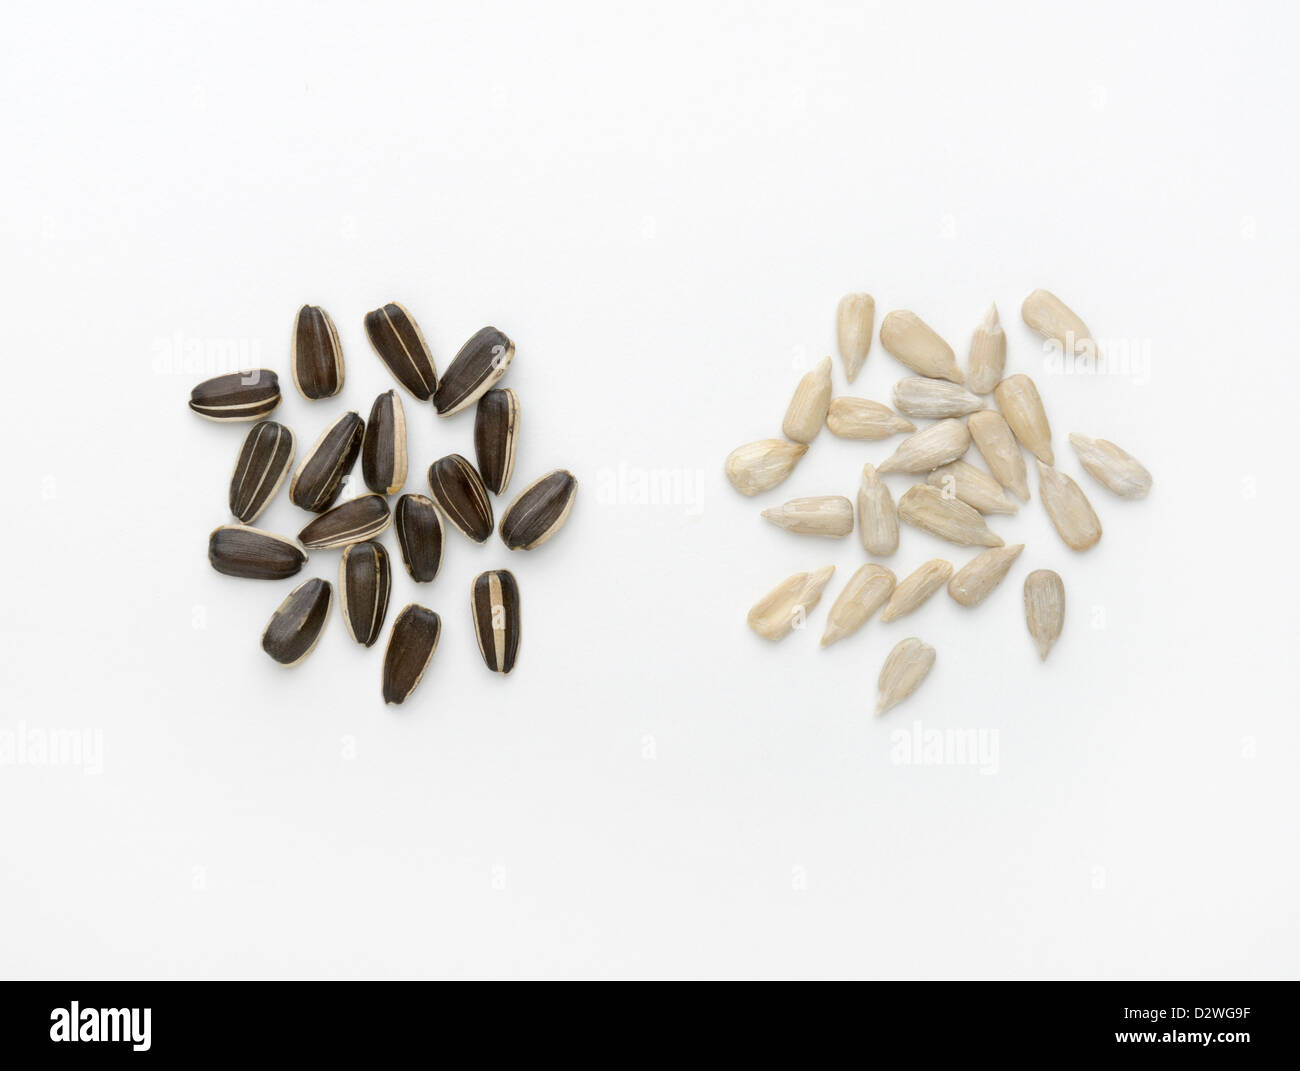 Girasole, Helianthus annuus, semi. Il bianco è il kernel del frutto (achene). Il nero 'shell' è il pericarpo Foto Stock